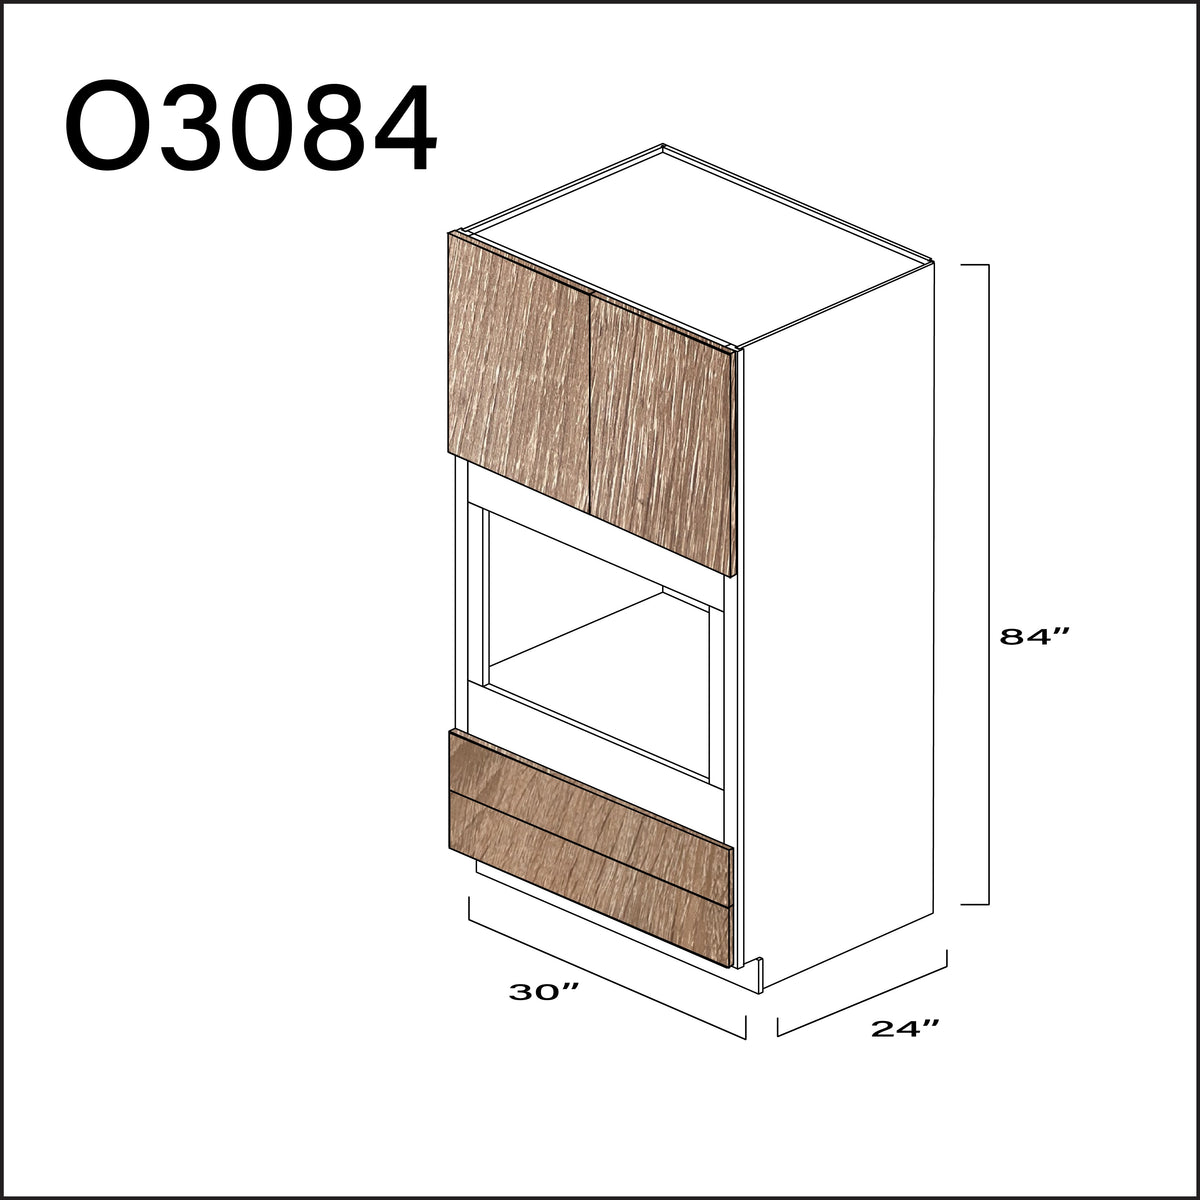 Textured Oak Frameless Single Oven Cabinet - 30" W x 84" H x 24" D